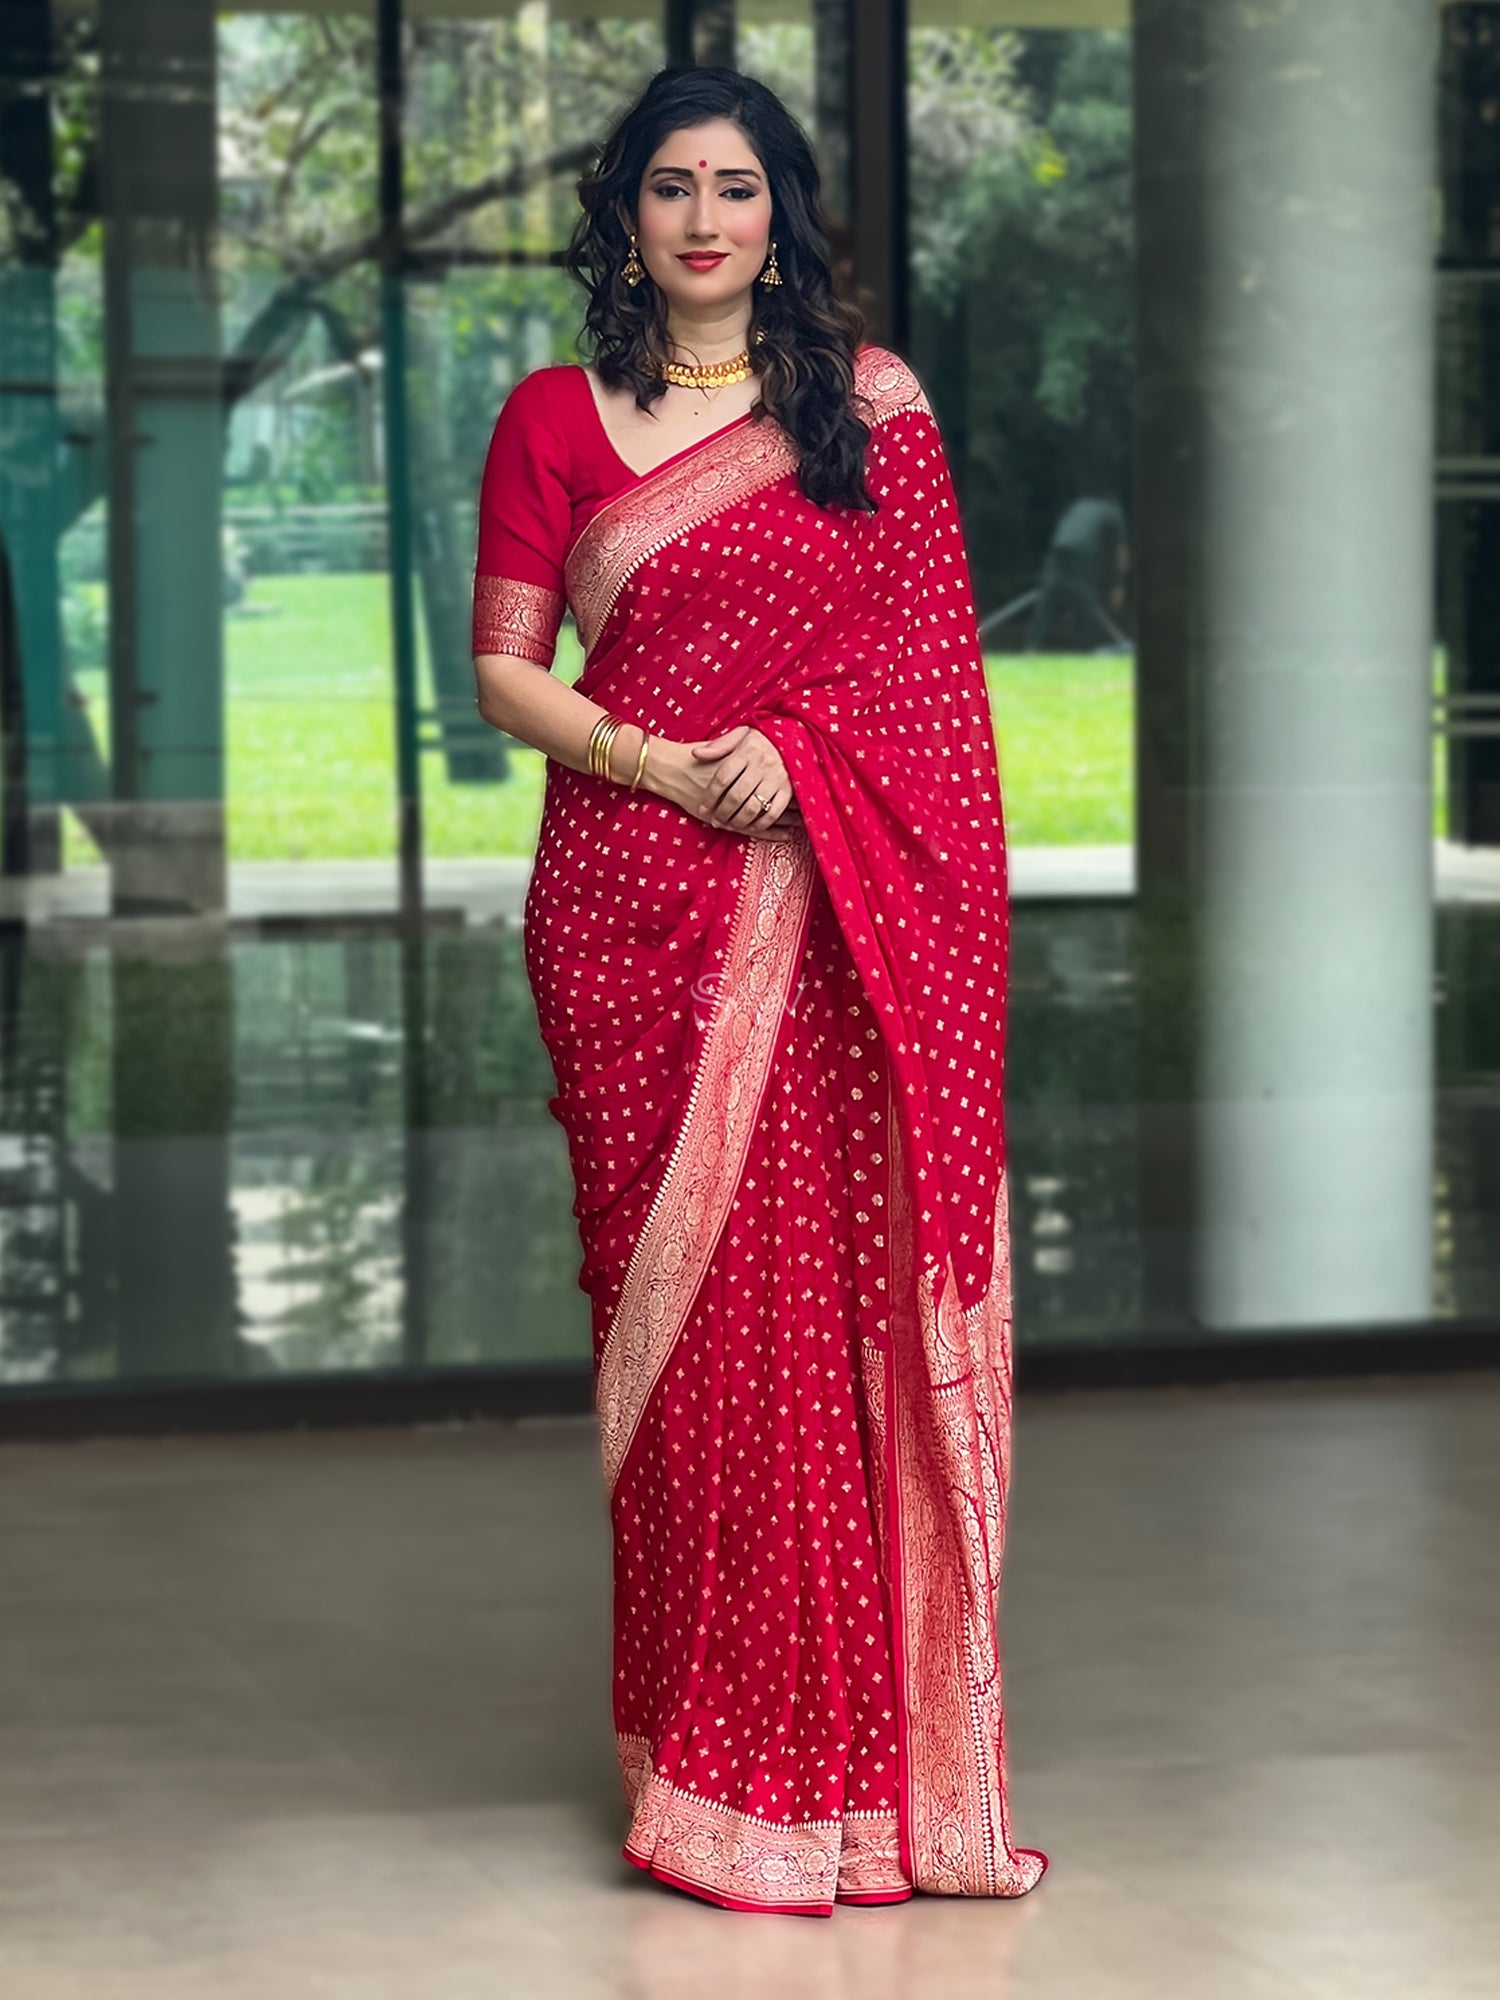 Saree Under 30k, Women's Designer Fashion